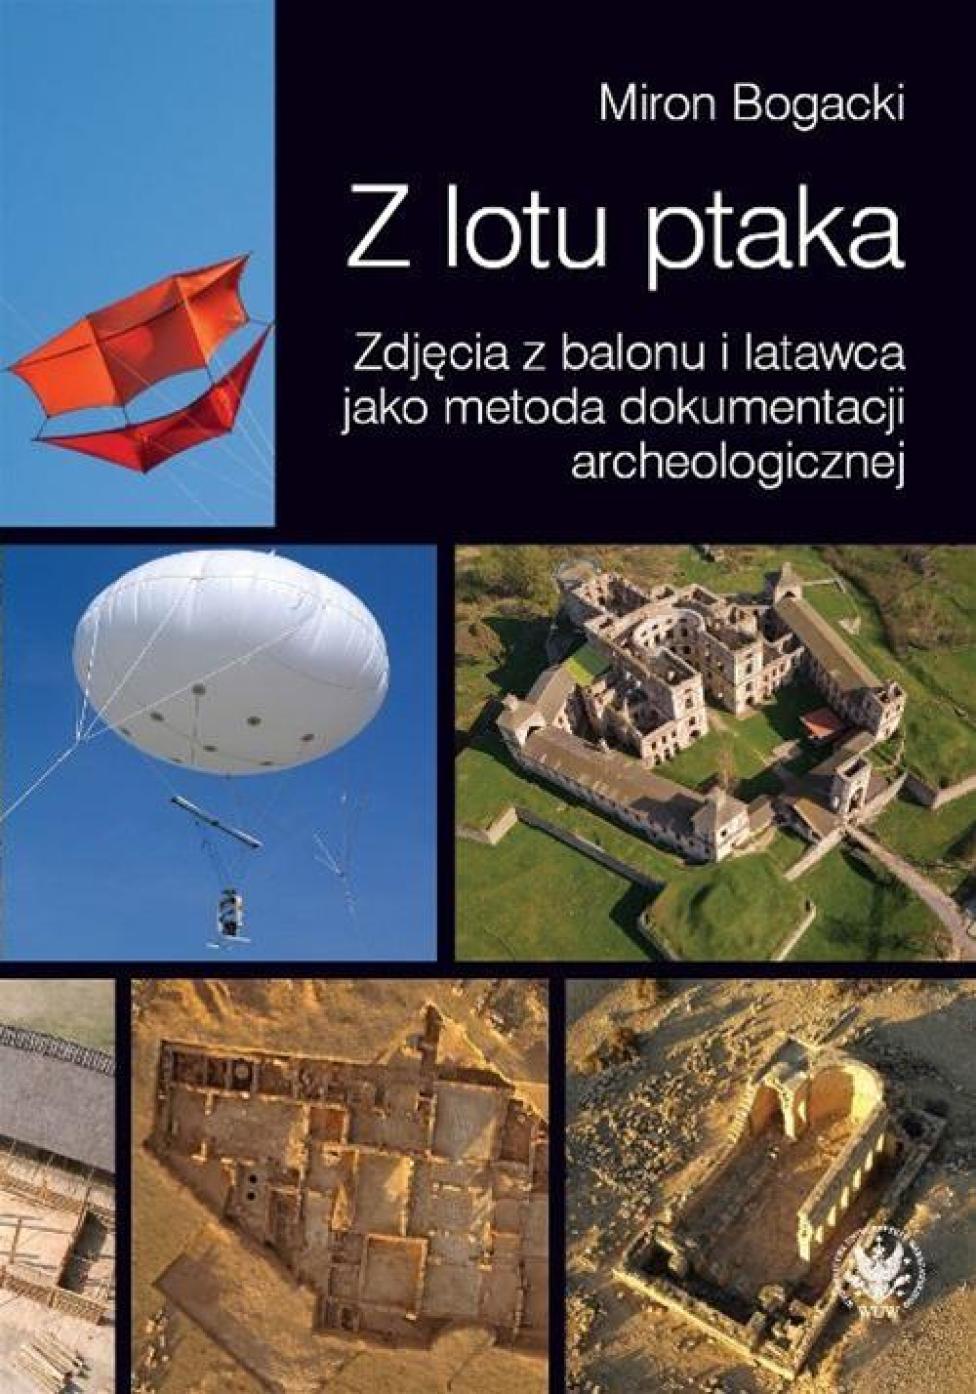 Książka "Z lotu ptaka" dr Mirona Bogackiego